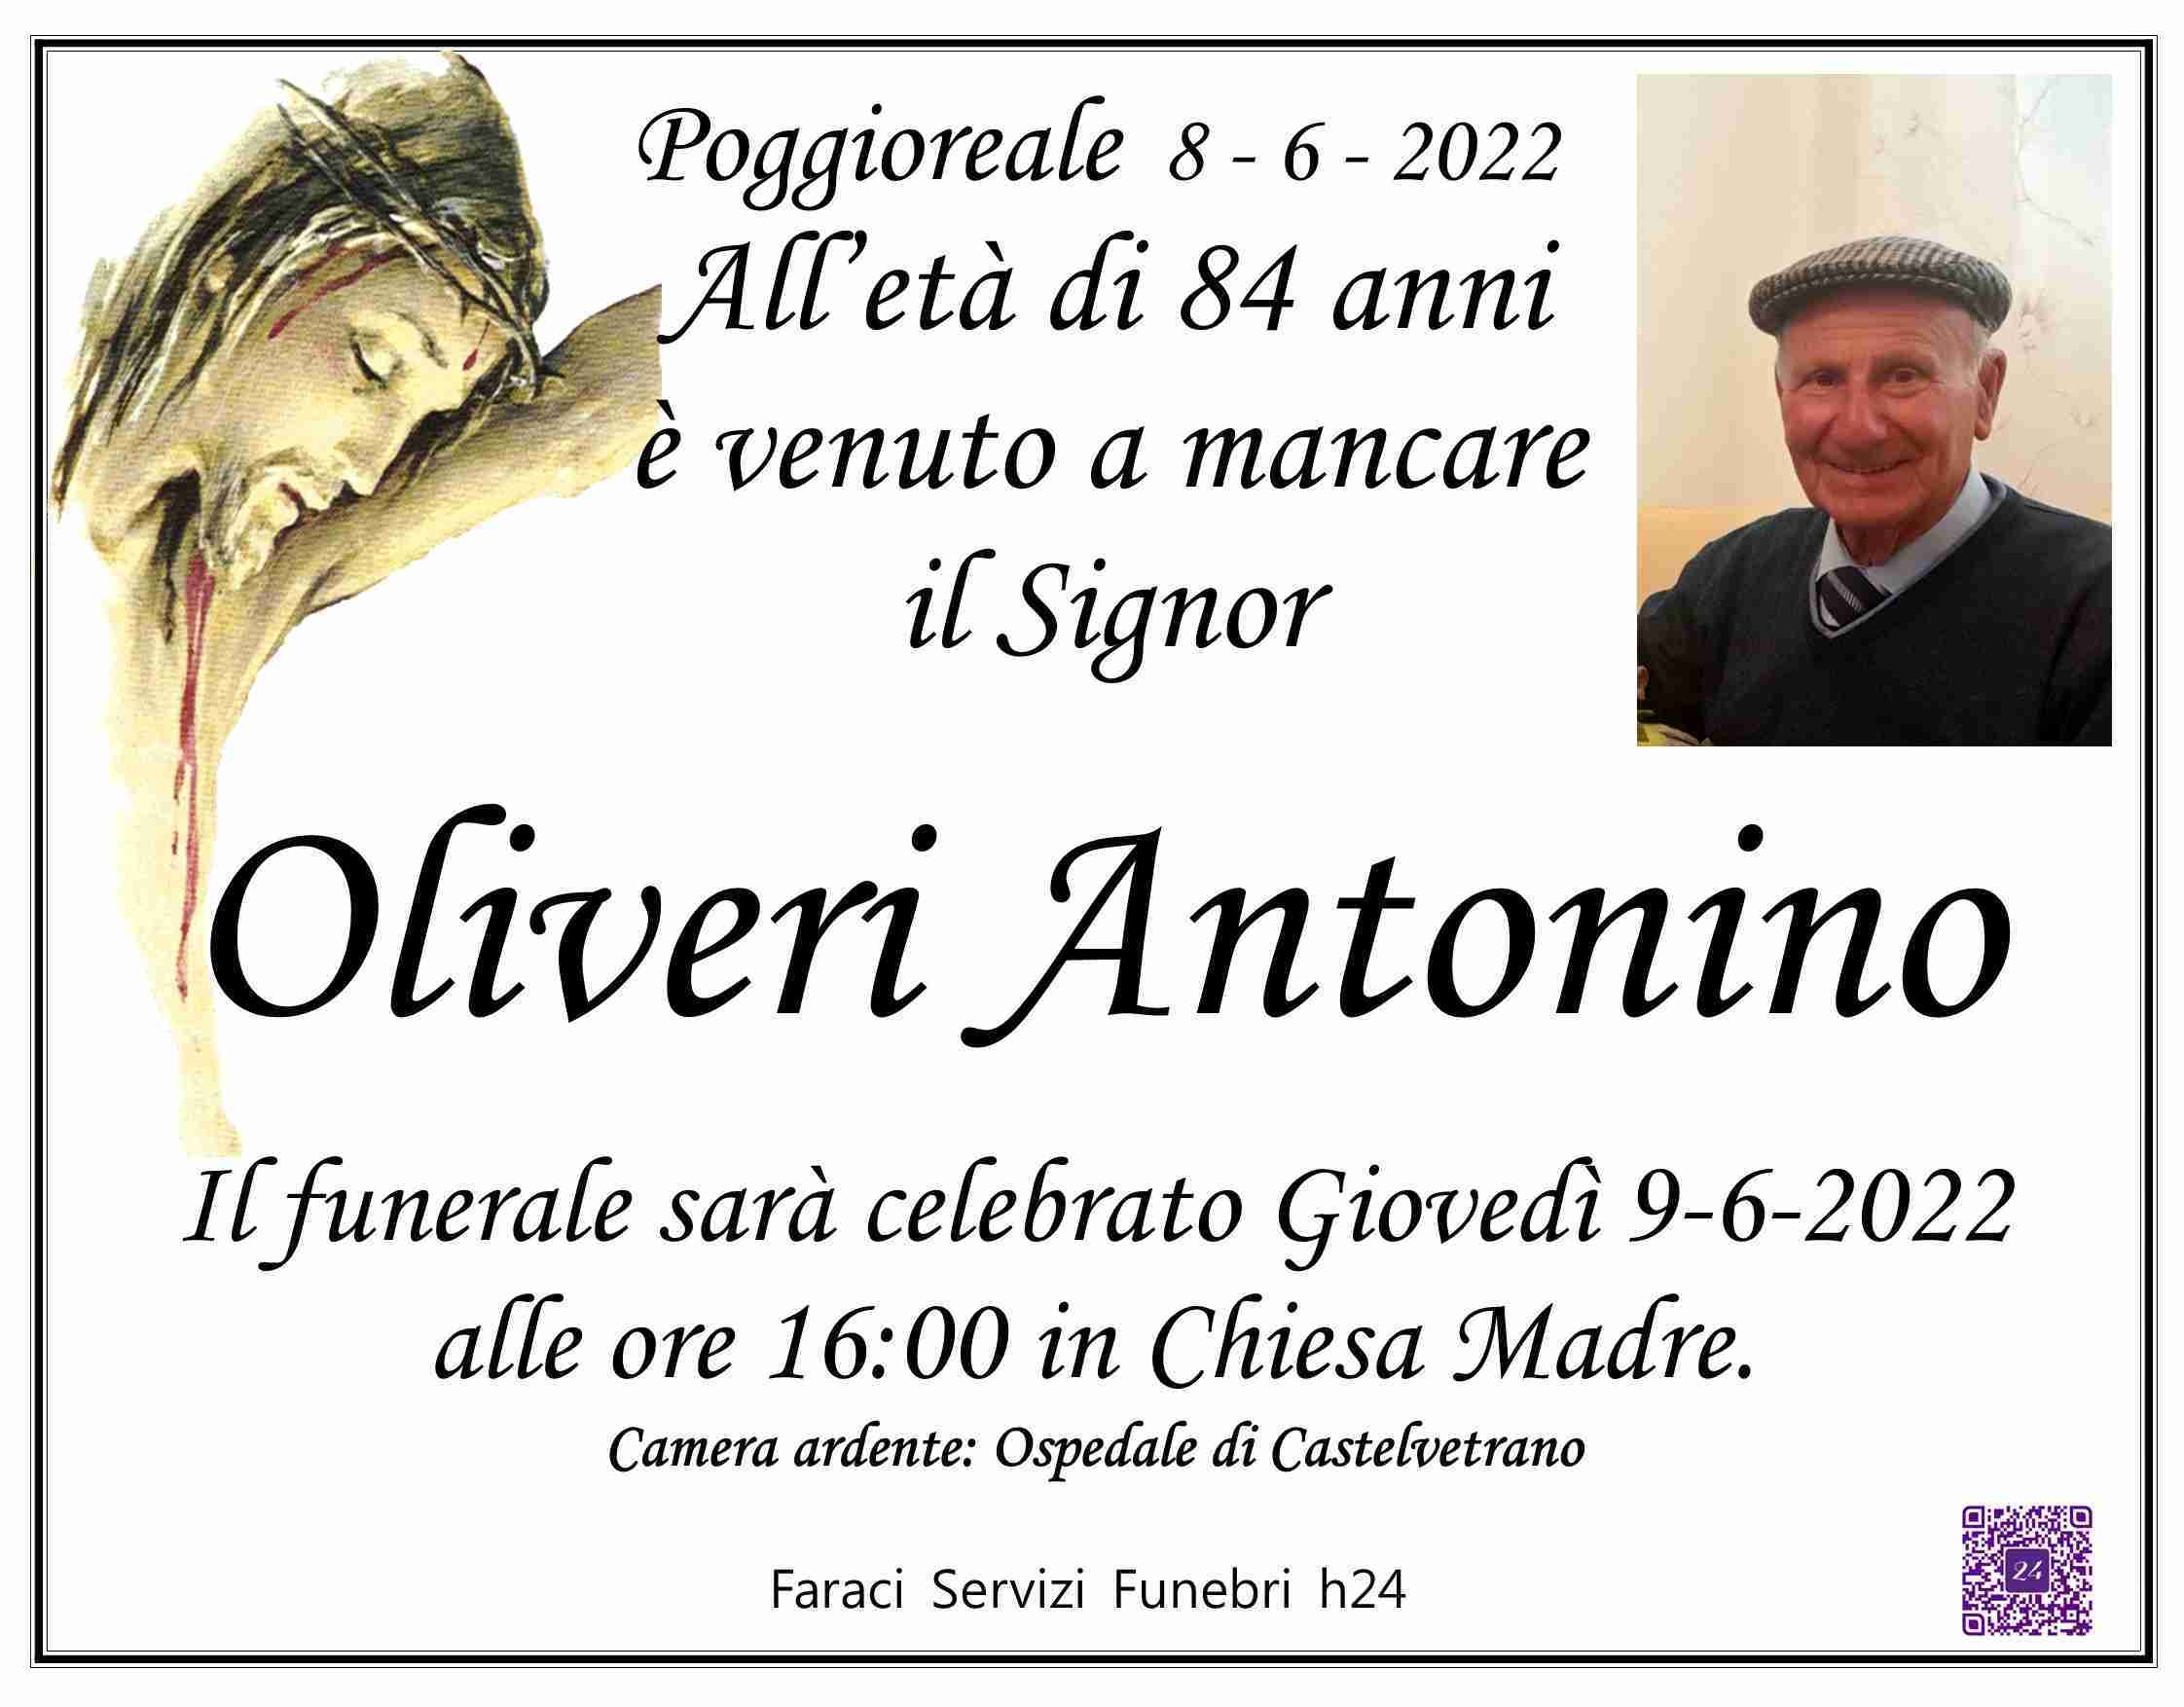 Antonino Oliveri